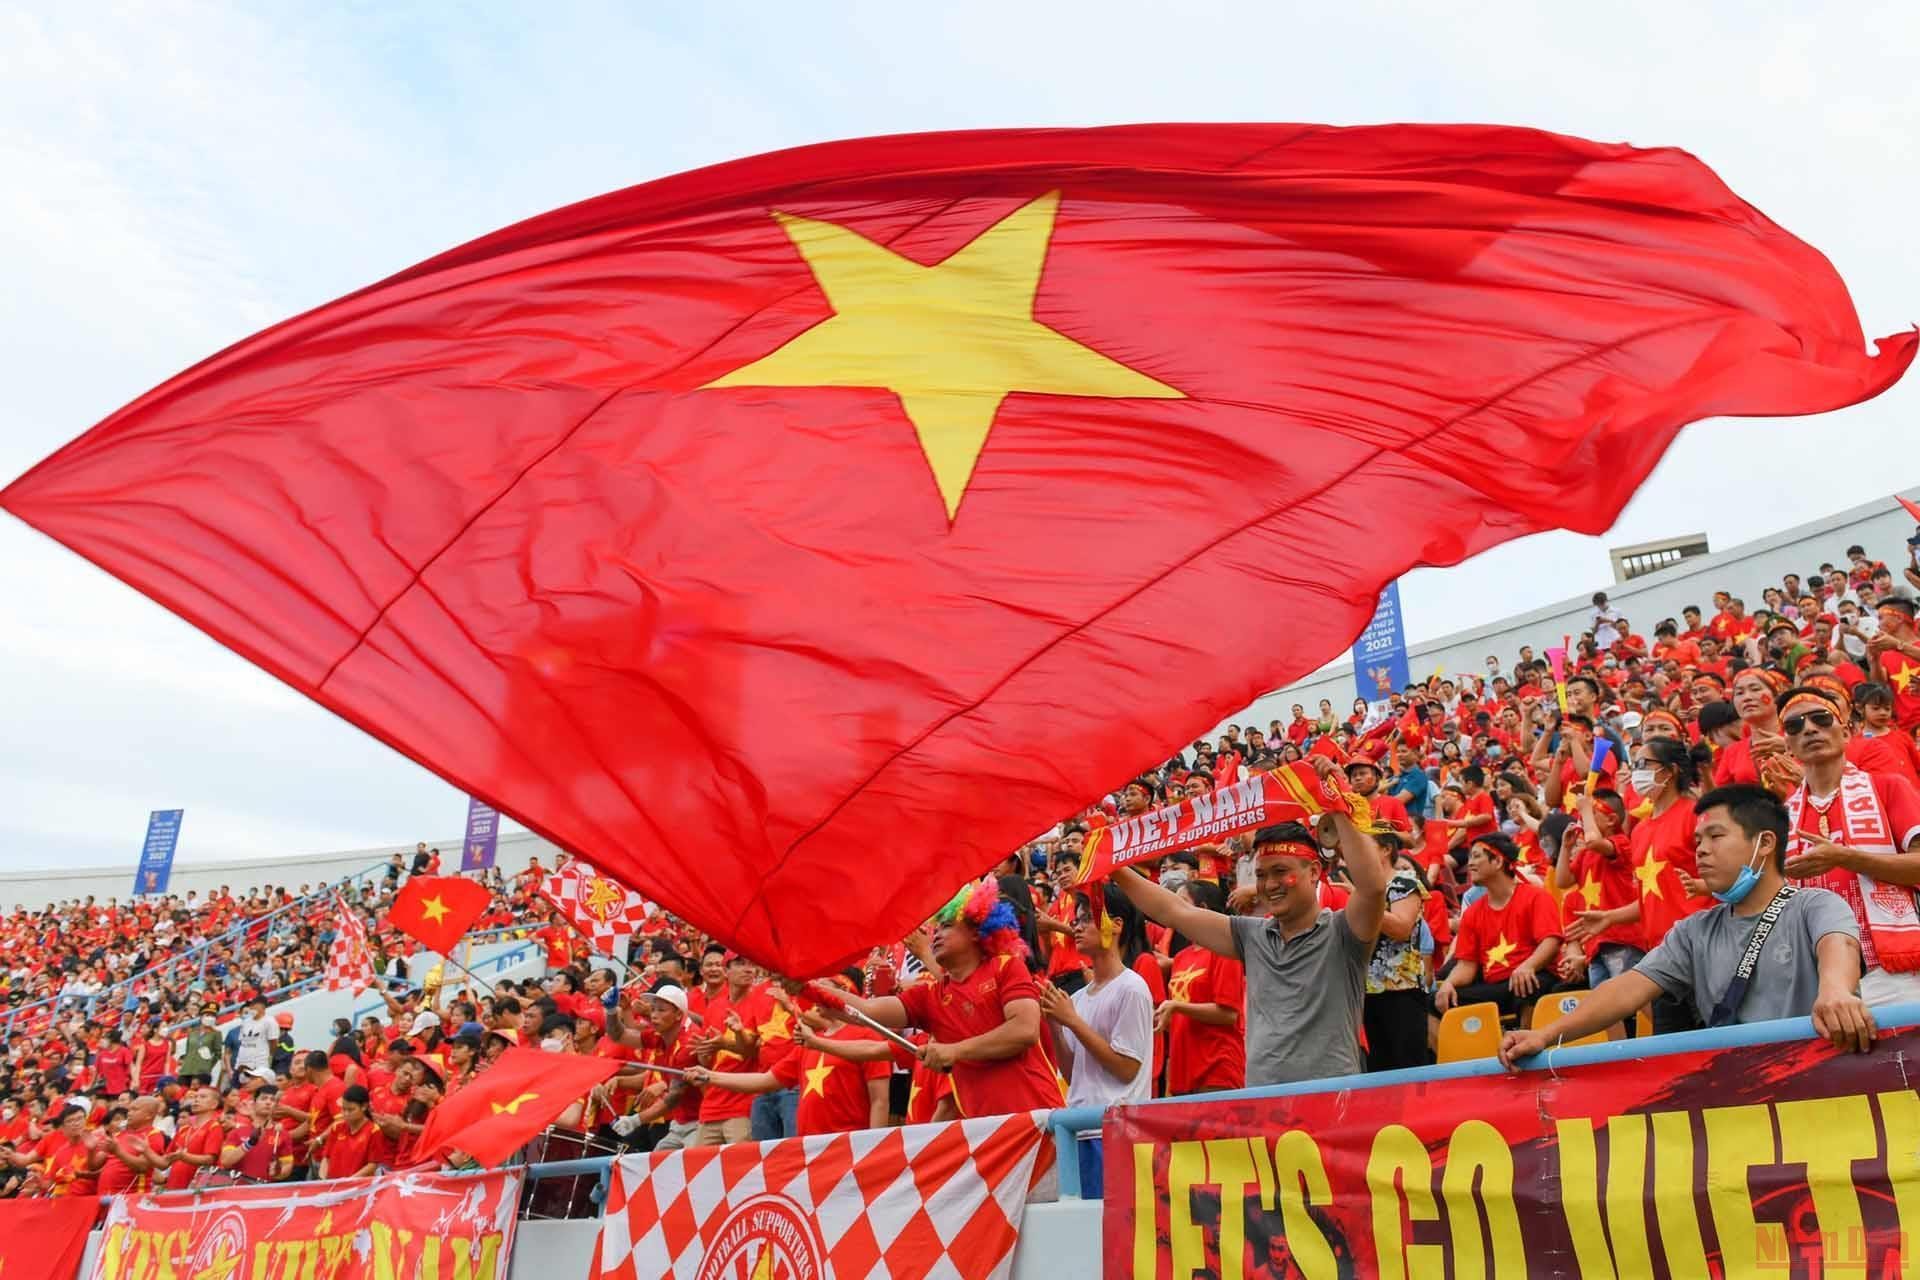 Đối ngoại tỉnh Lào Cai cờ đỏ sao vàng
Tỉnh Lào Cai sẽ góp phần vào việc mở rộng đối ngoại của Việt Nam với những nước láng giềng. Cờ đỏ sao vàng trong hình dáng và màu sắc đặc trưng của mình sẽ là biểu tượng đại diện cho sự gắn kết, hợp tác và phát triển của Việt Nam trong khu vực Đông Nam Á.